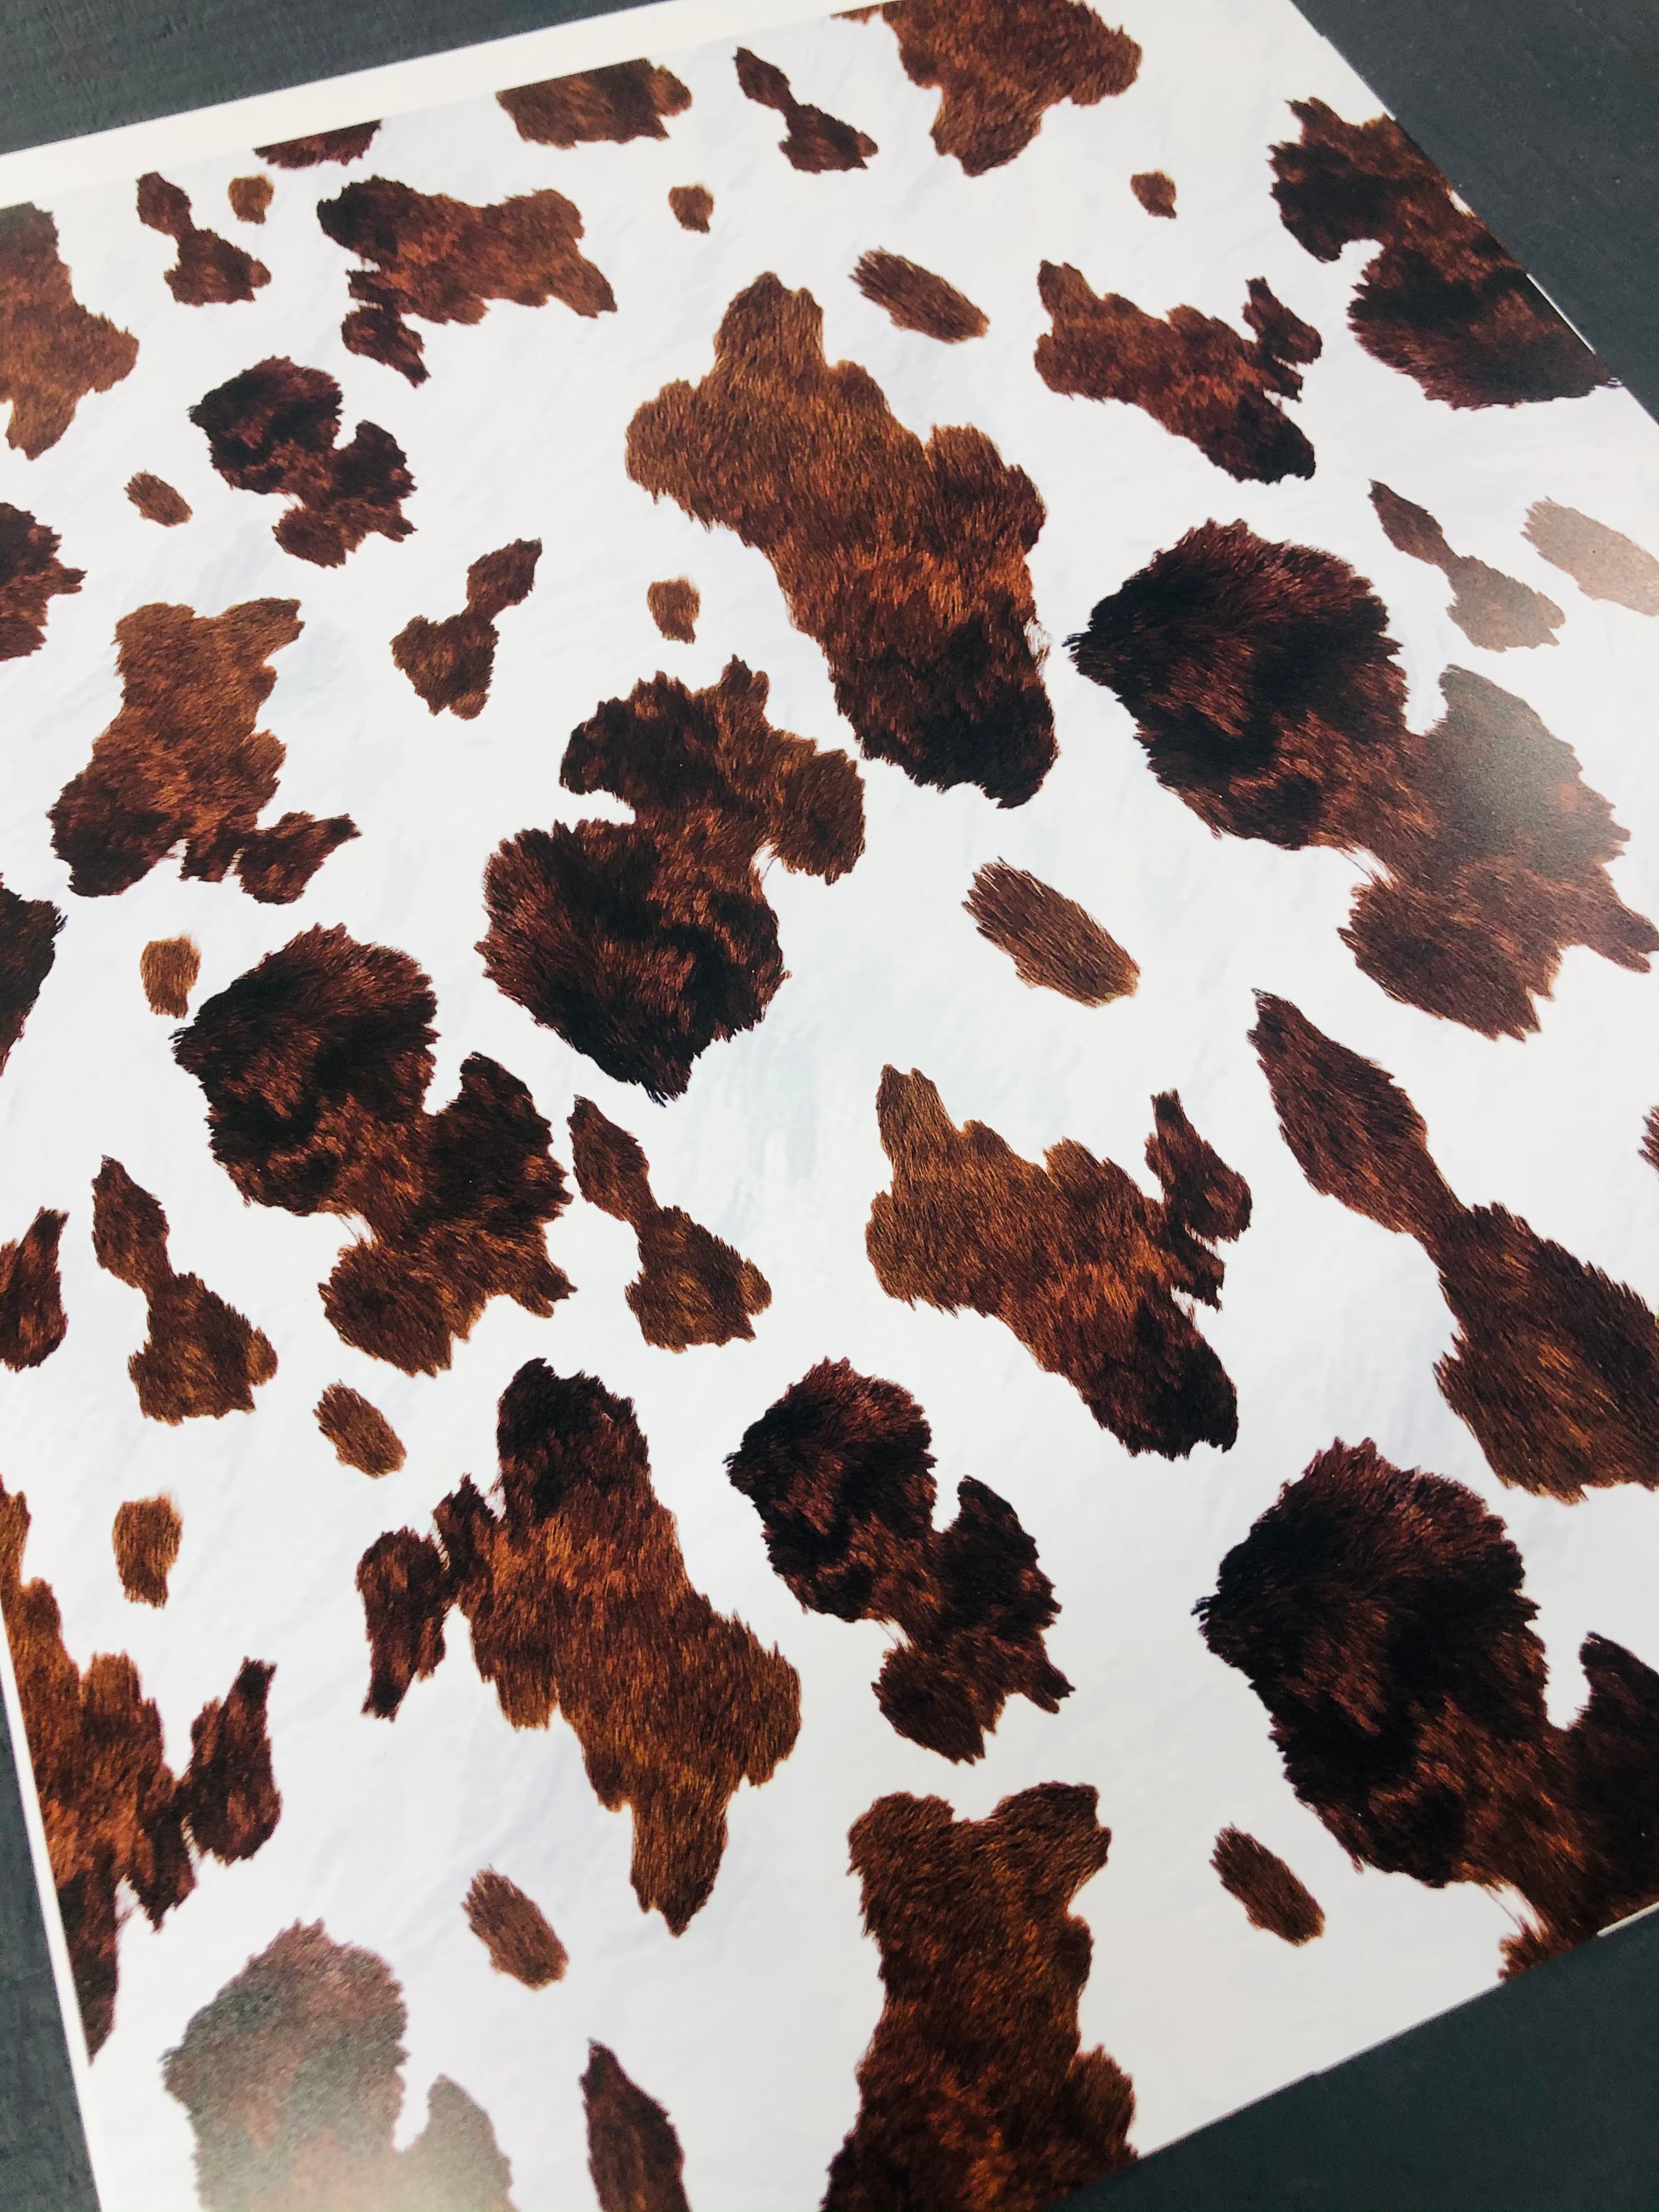 12x12 Patterned Heat Transfer Vinyl - Cow Spots